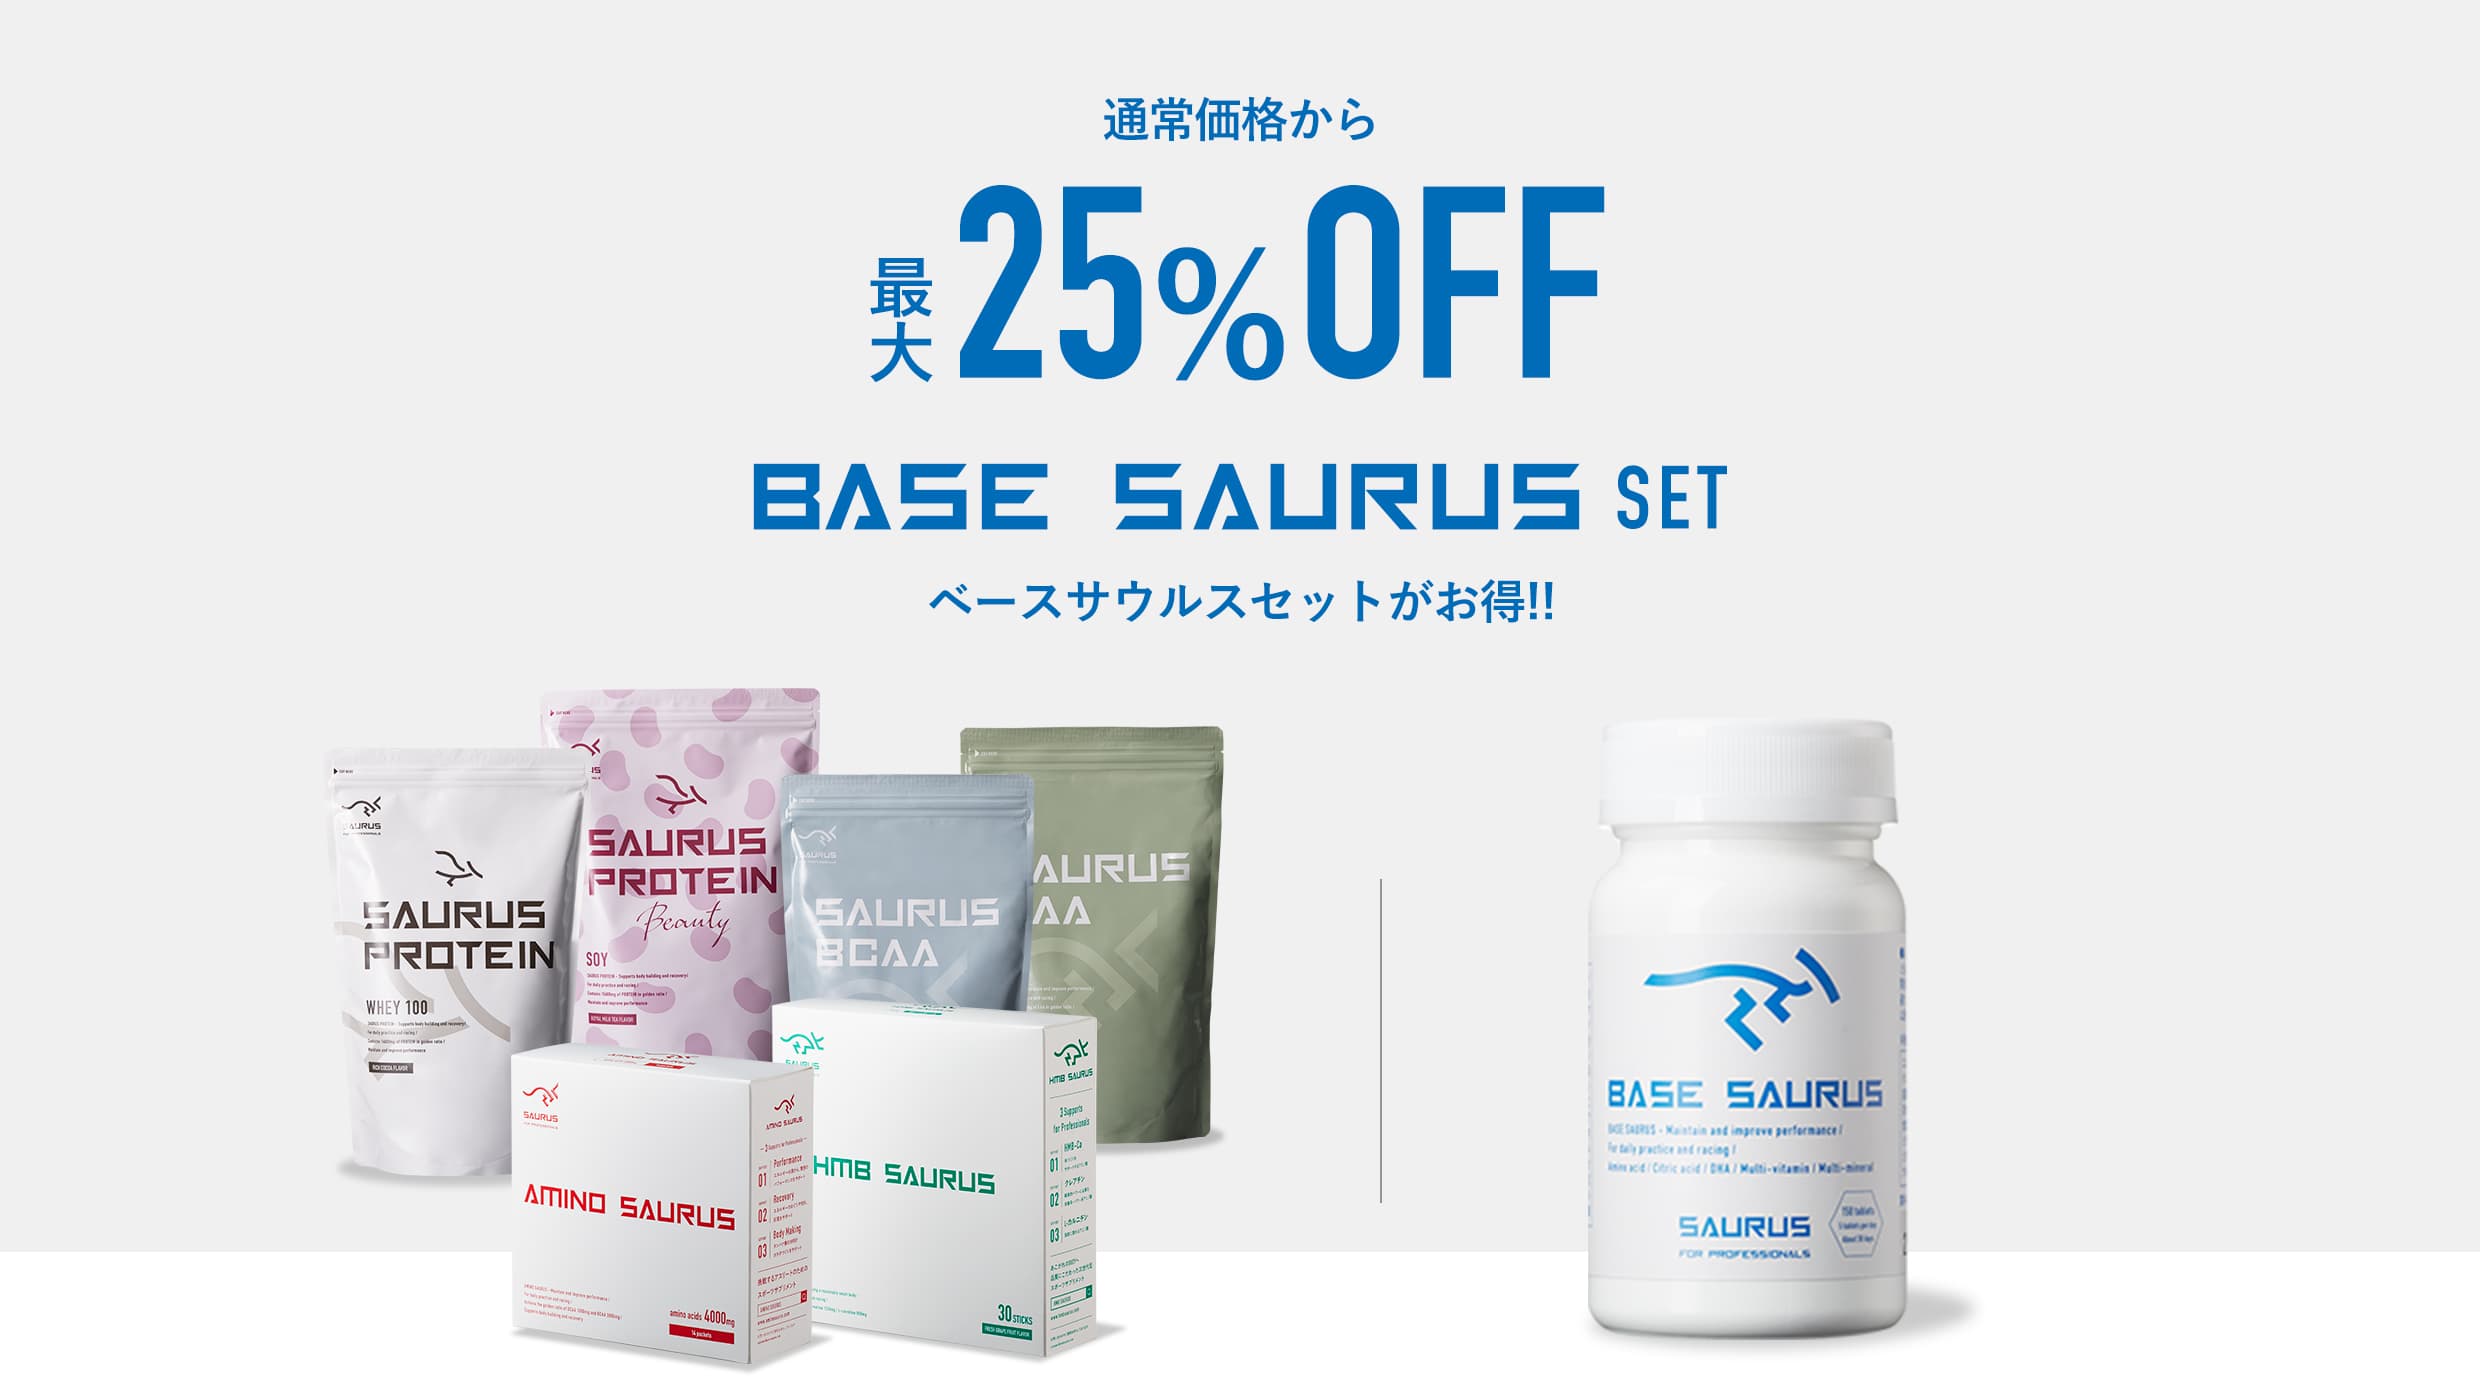 通常価格から最大25%OFF BASE SAURUS SET ベースサウルスセットがお得!!